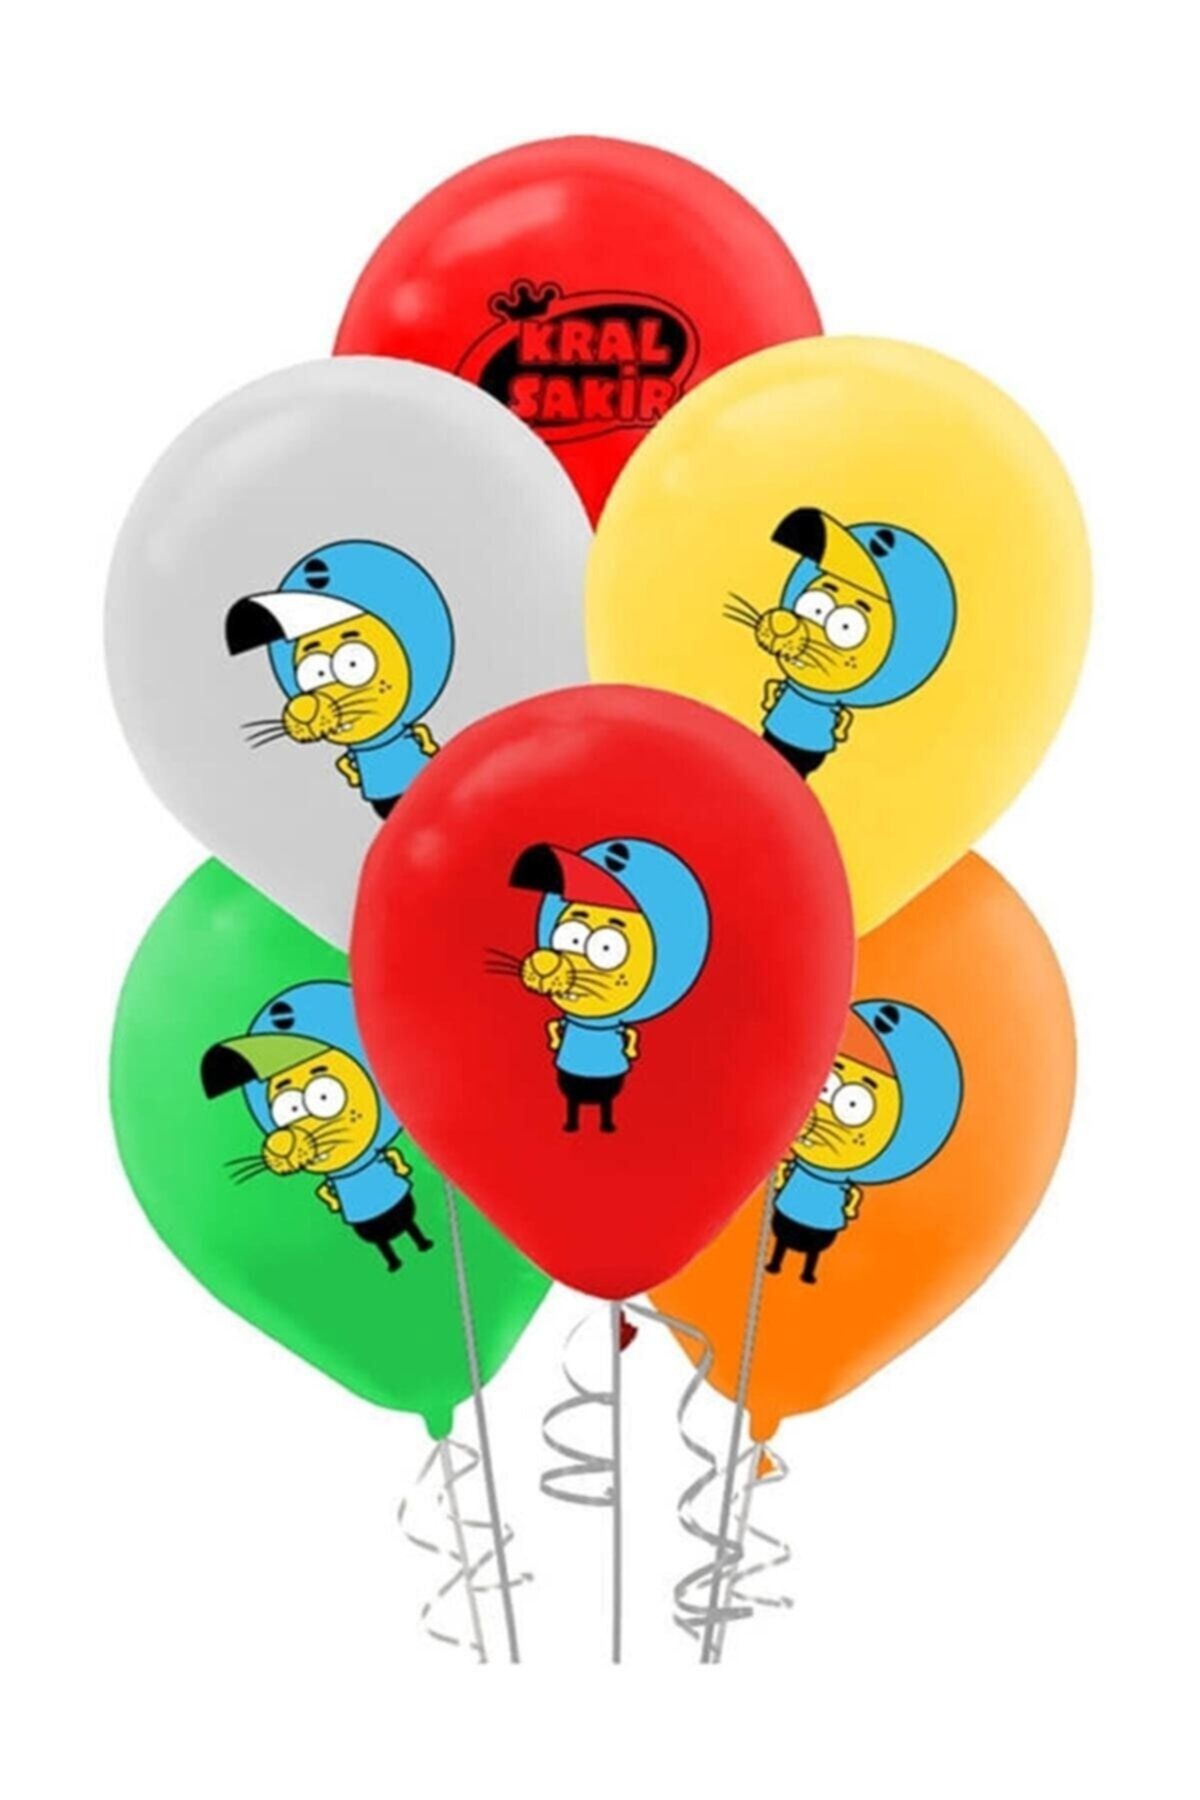 Parti Dolabı 10 Adet Kral Şakir Balon Çok Renkli Rengarenk Lateks Doğum Günü Balonu 30cm 12inc